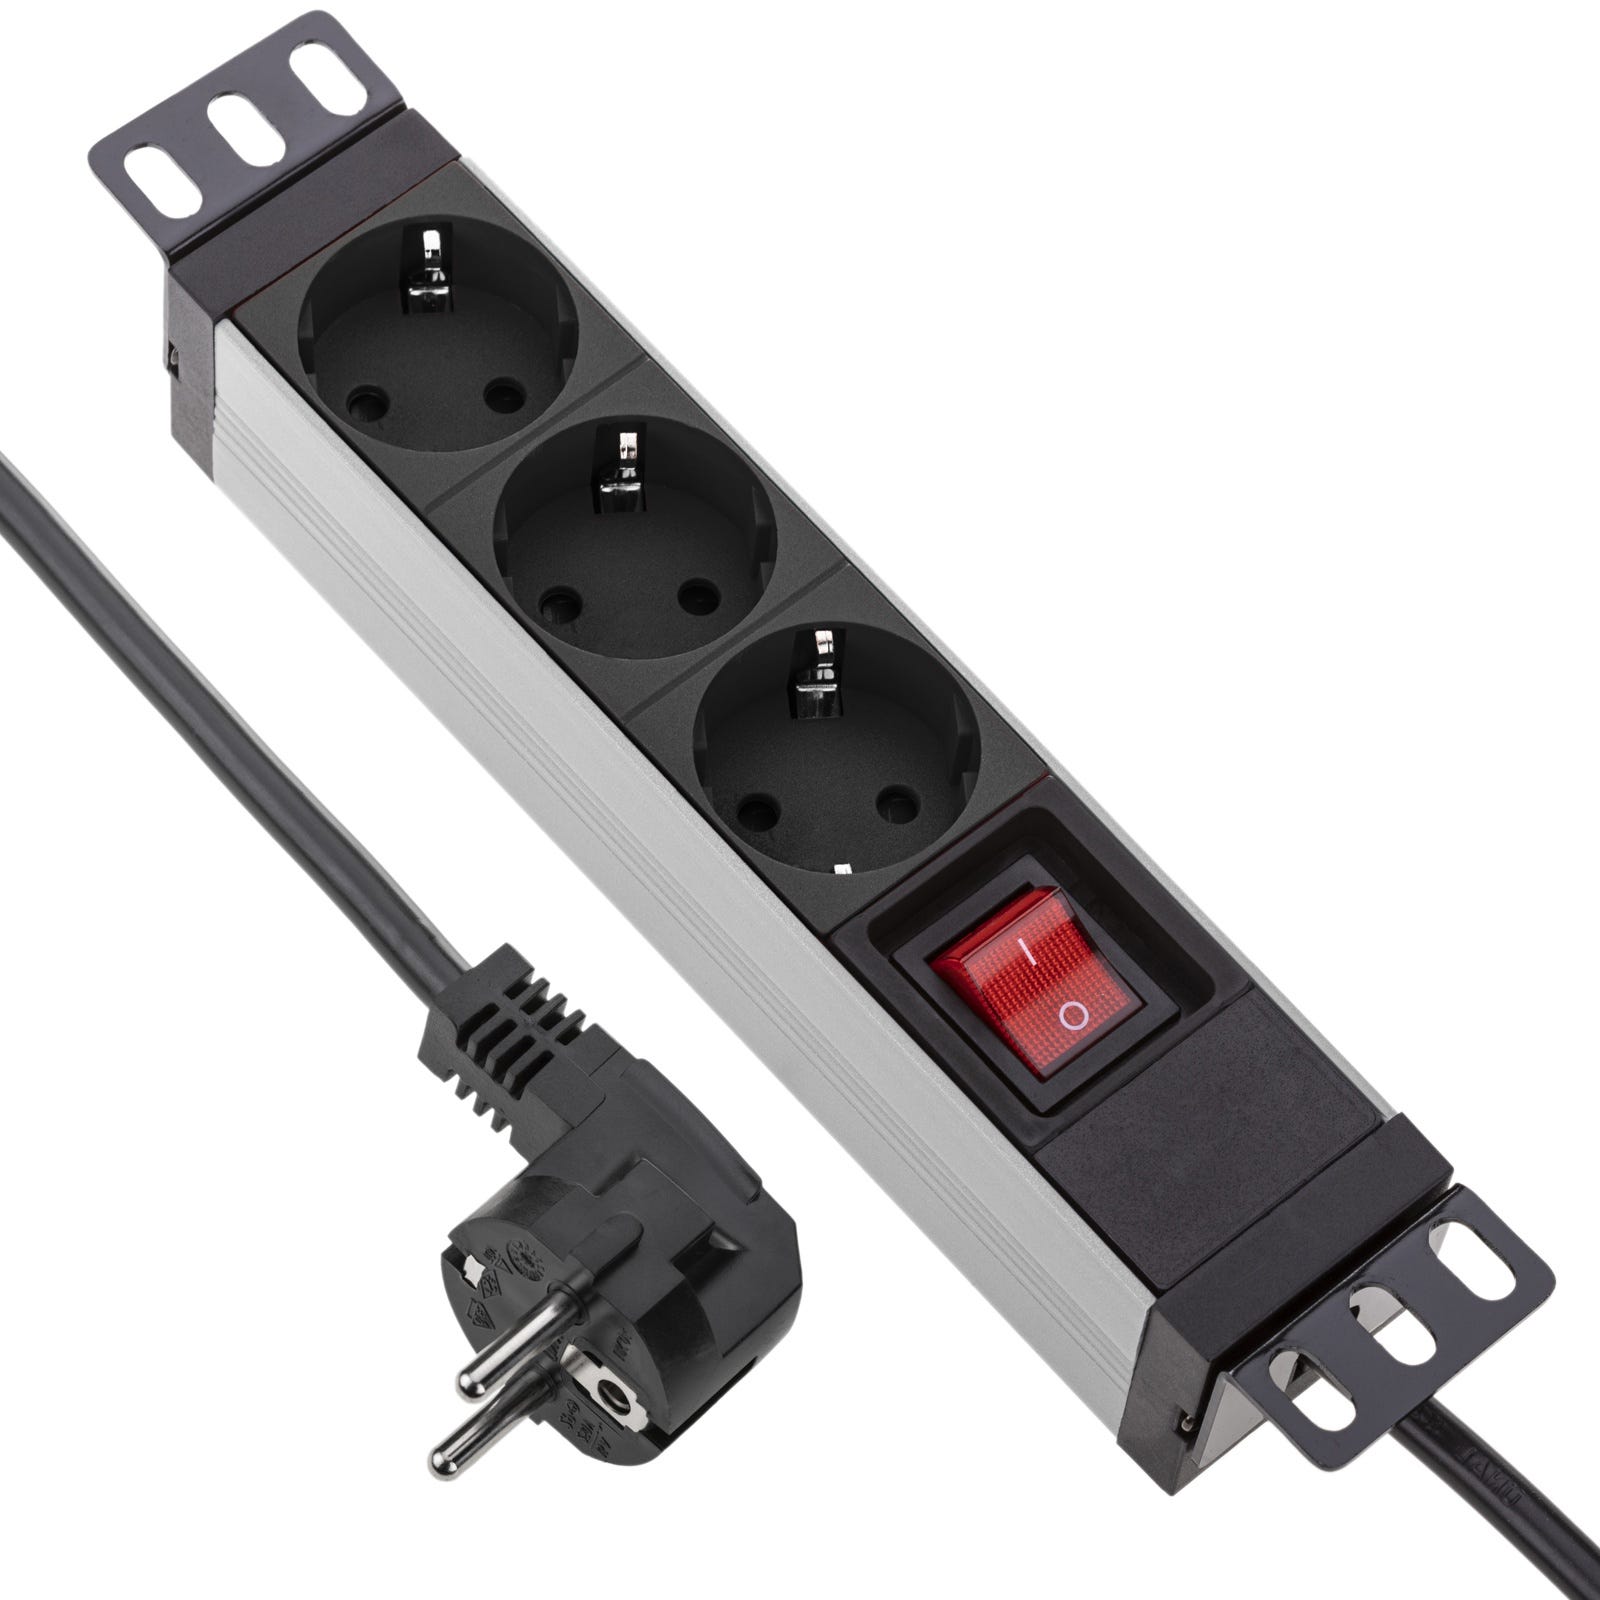 Multiprise cube - HOMEPROTEK - 1 USB A et 2 USB C - Un chargeur à induction  - 3 prises Europe - Un bouton ON/OFF - - Noir